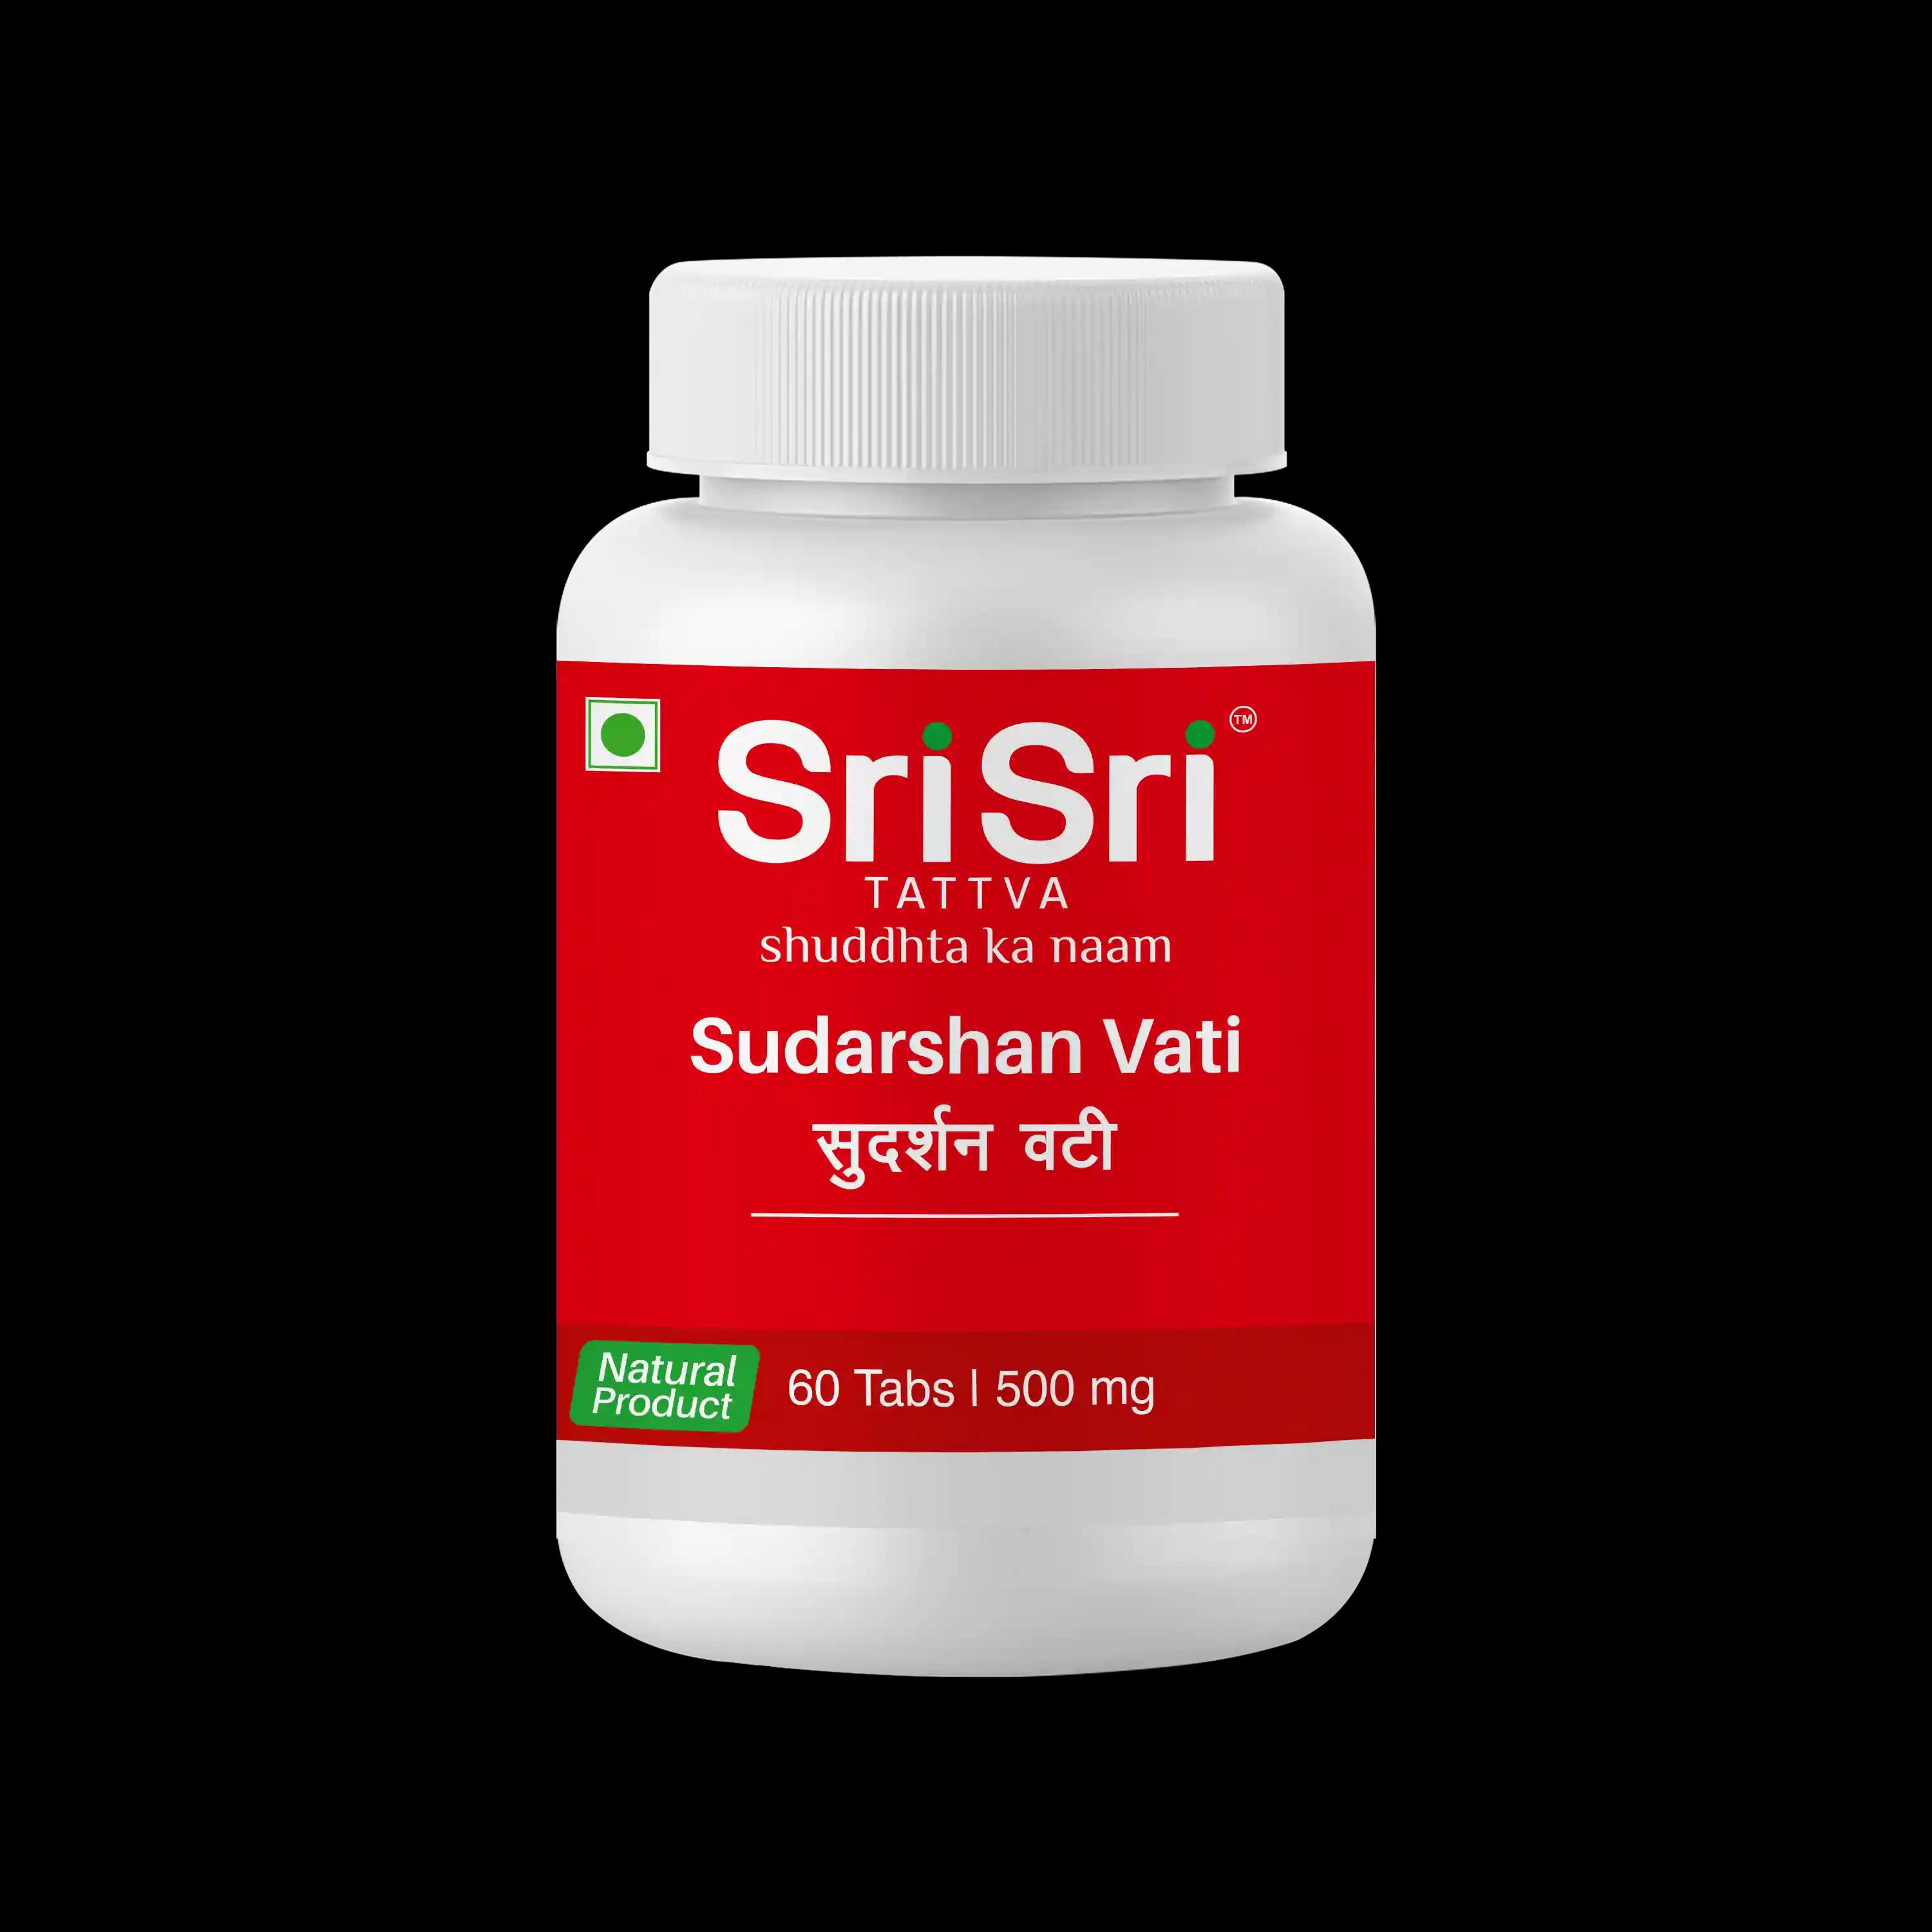 Sri Sri Tattva Sudarshan Vati - Fever & Liver Disorders , 60 Tabs | 500 Mg